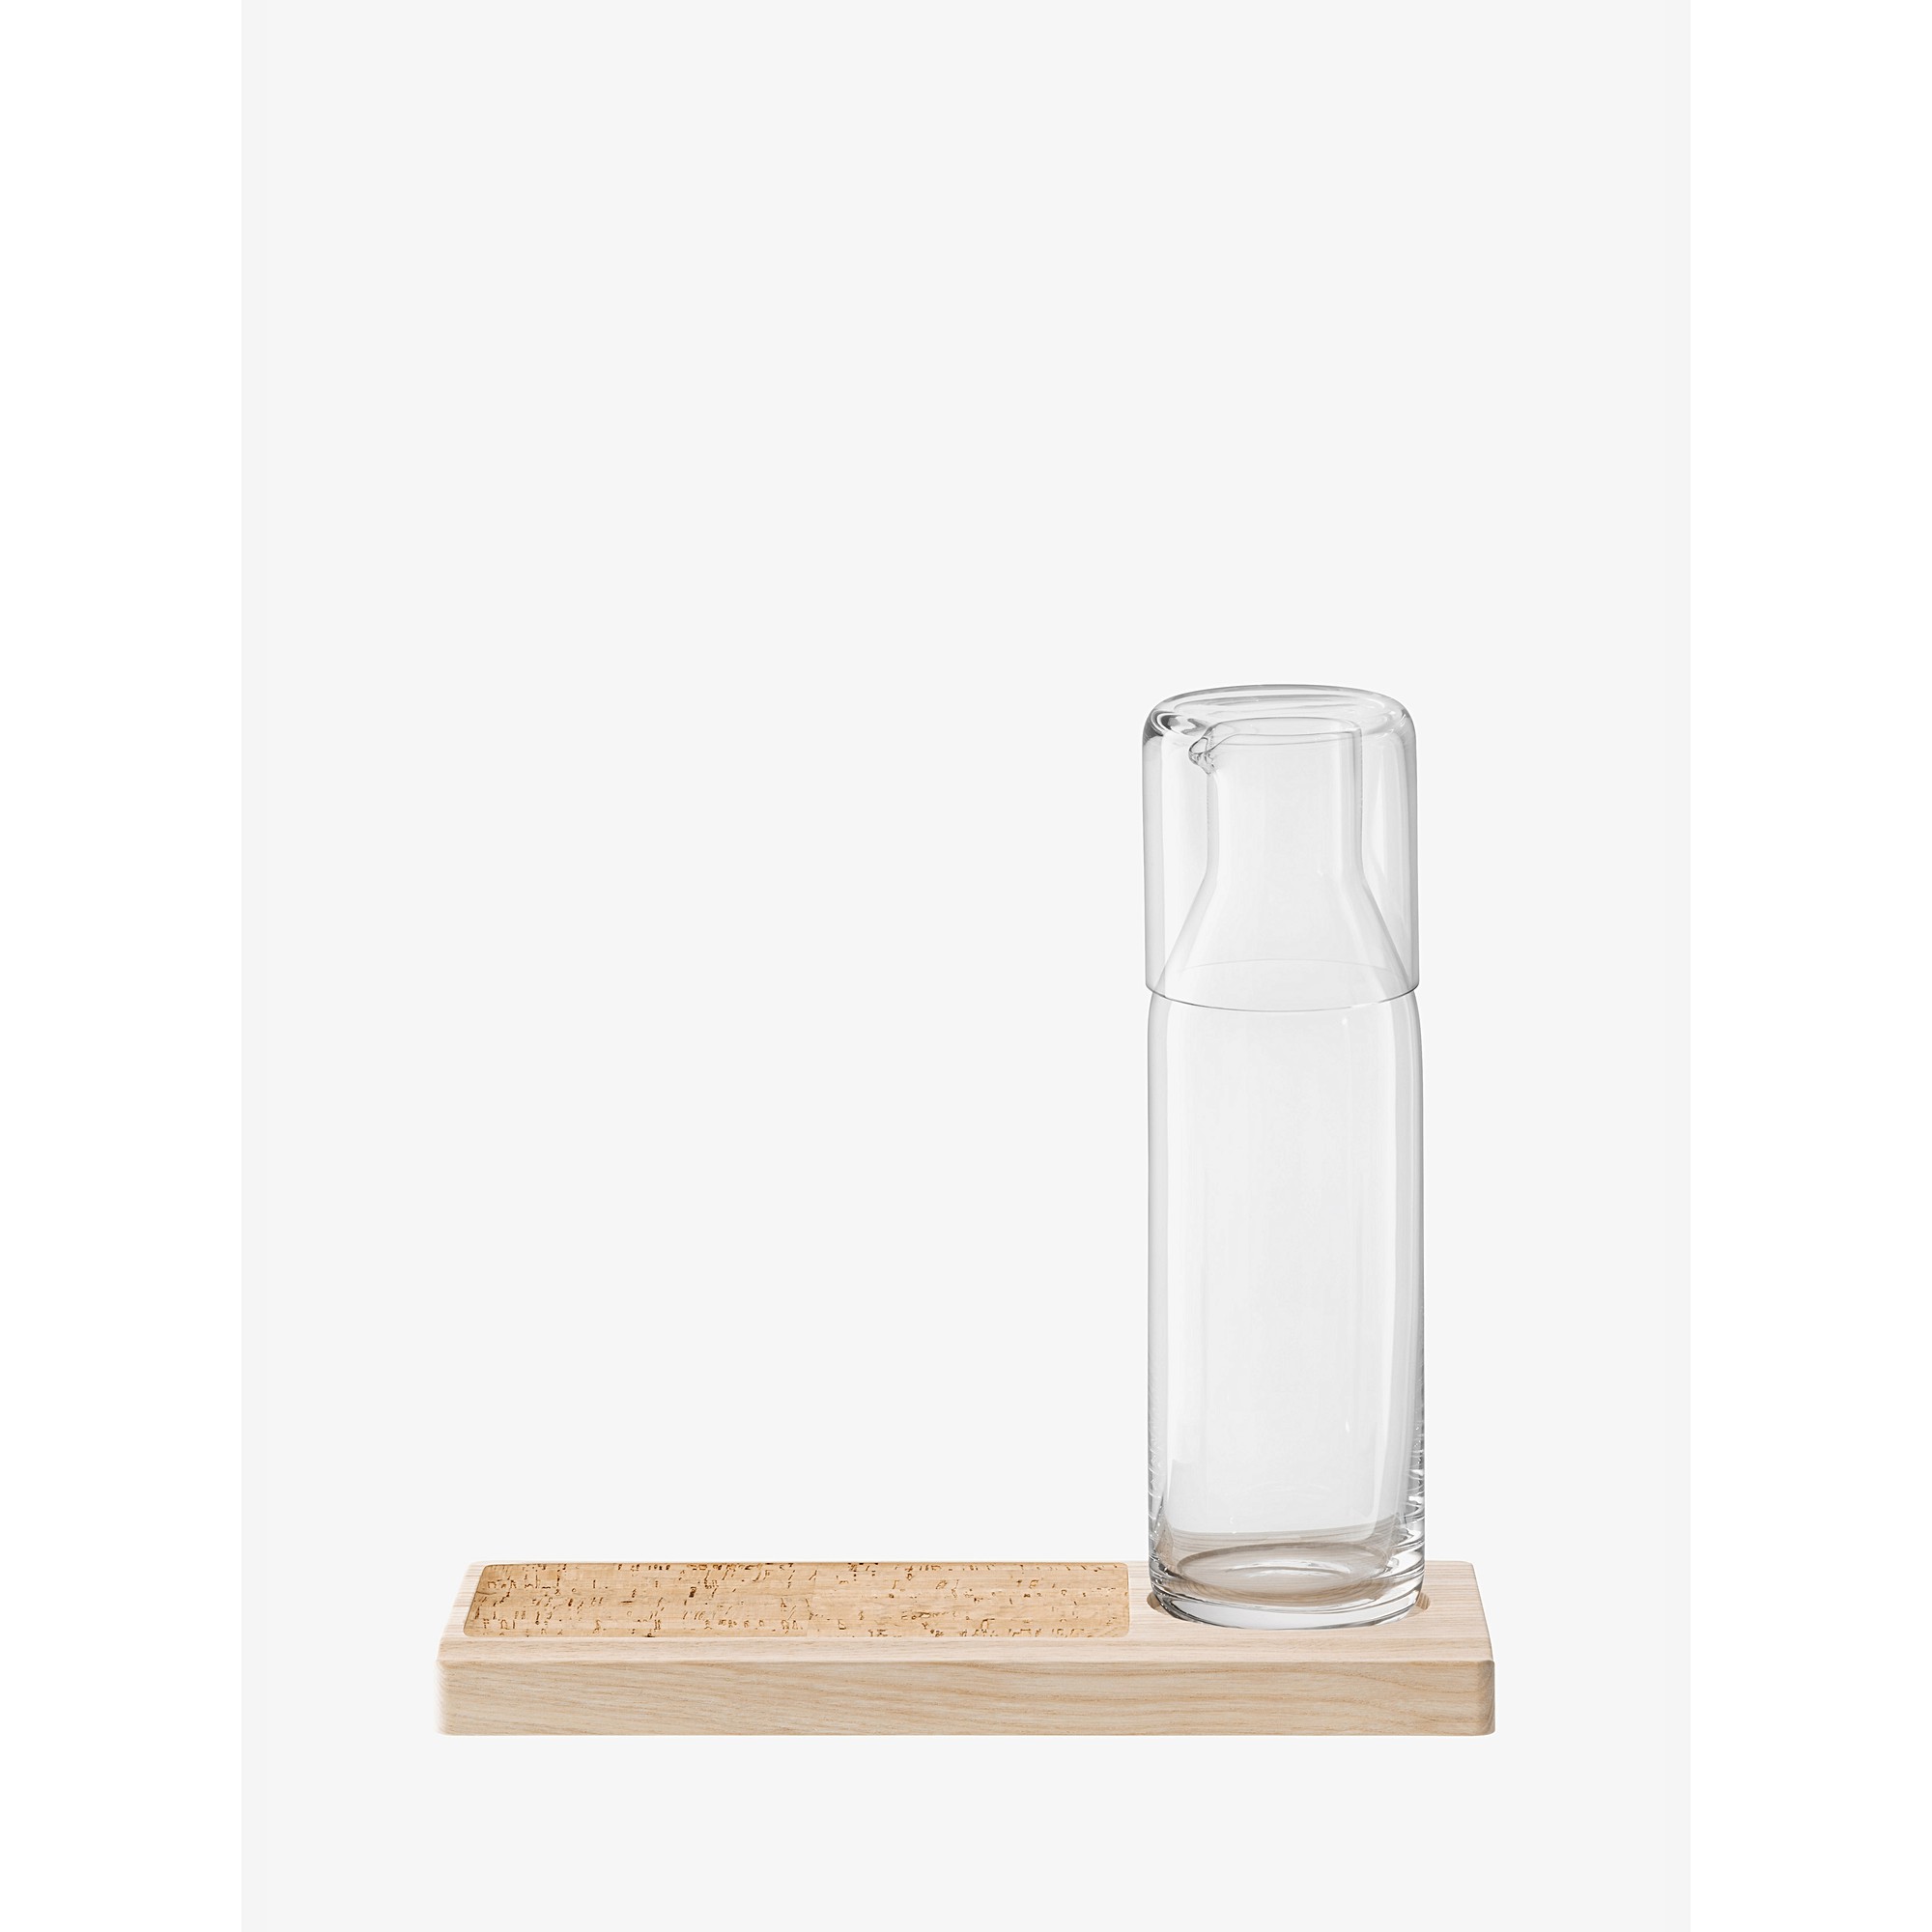 LSA Plateau Carafe Set|glass, wood|clear|L28cm